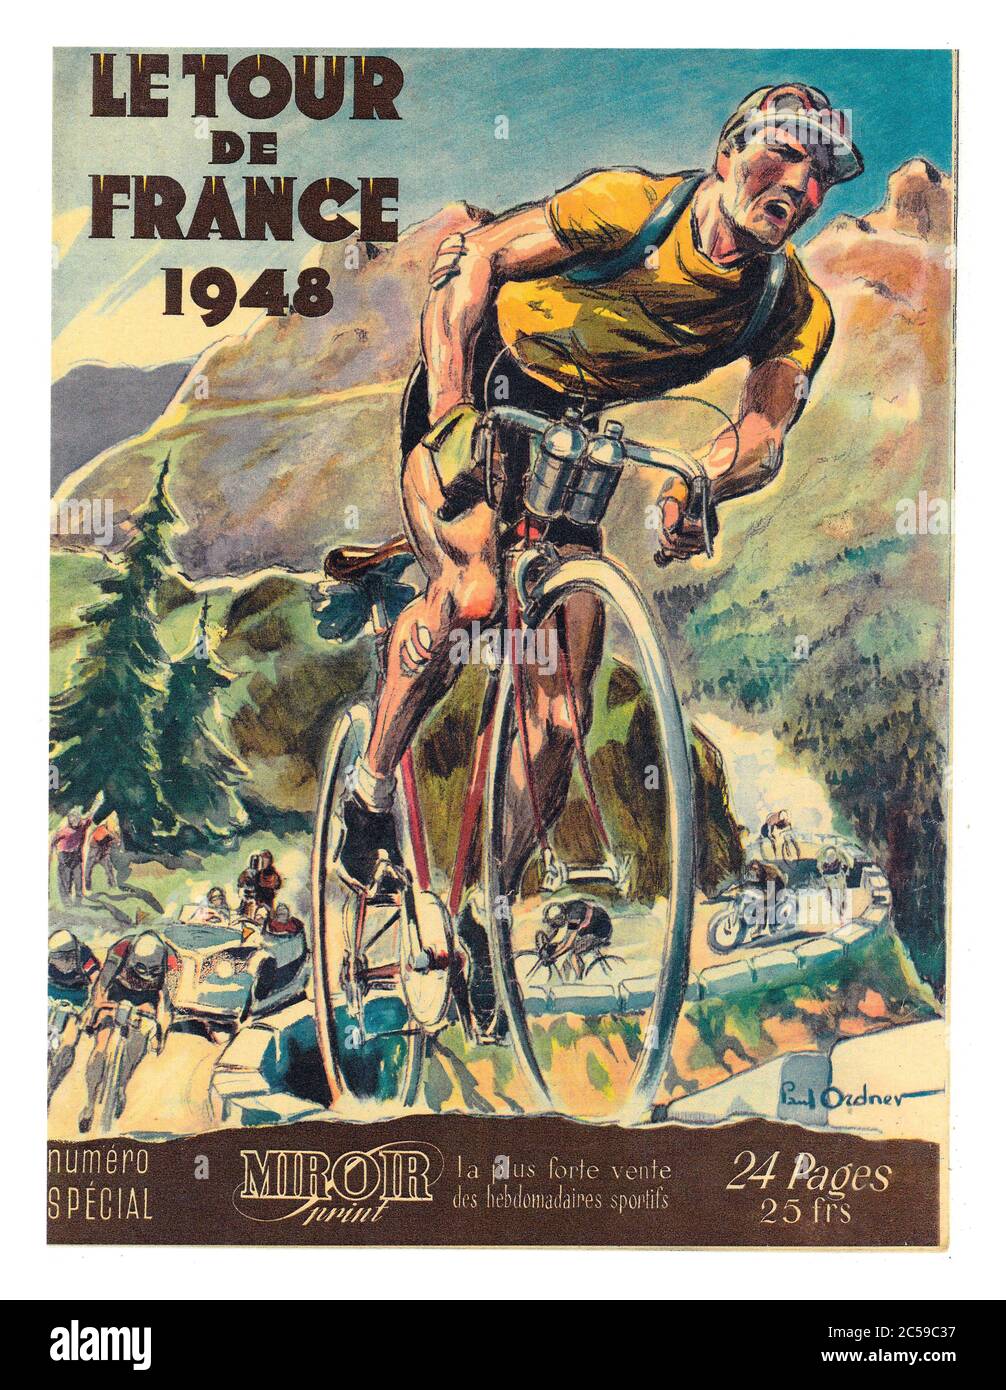 Copertina della guida ai programmi d'epoca degli anni '40 per il Tour de France 1948, archivio d'annata informazioni sugli sport ciclistici francesi al prezzo di 24FR Francia da Paul Ordner Foto Stock